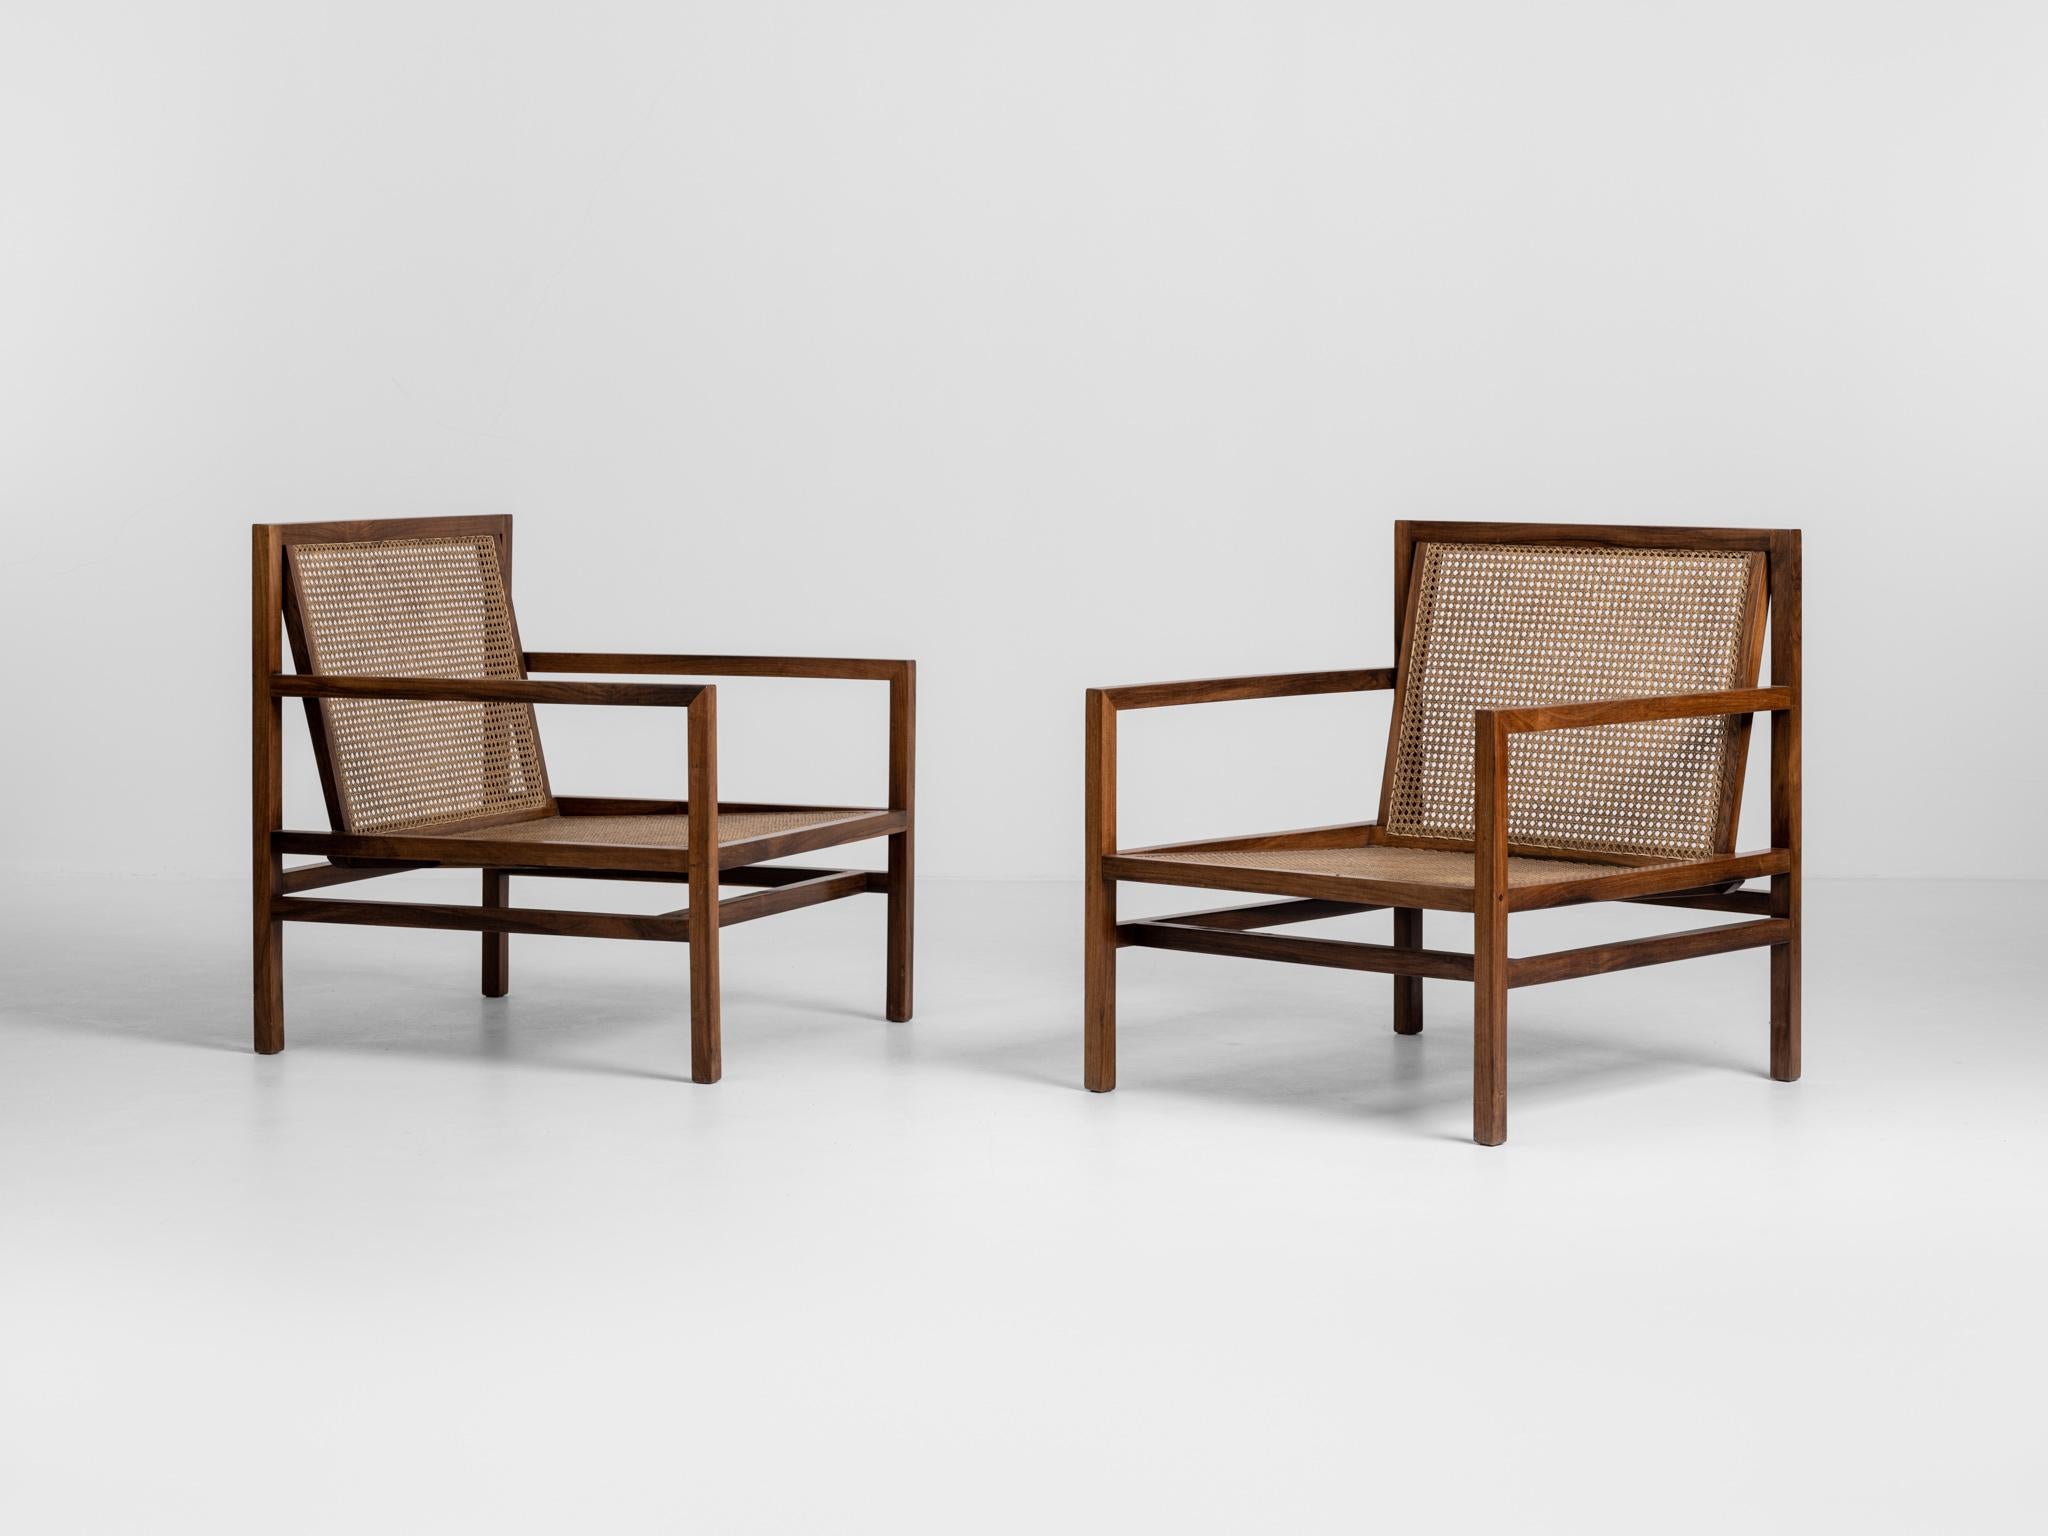 Paire de chaises longues modernes brésiliennes conçues par Joachim Tenreiro. Les structures des chaises sont en palissandre massif avec des sièges et des dossiers en cannage.

Joaquim Tenreiro (1906-1992) est connu comme le 